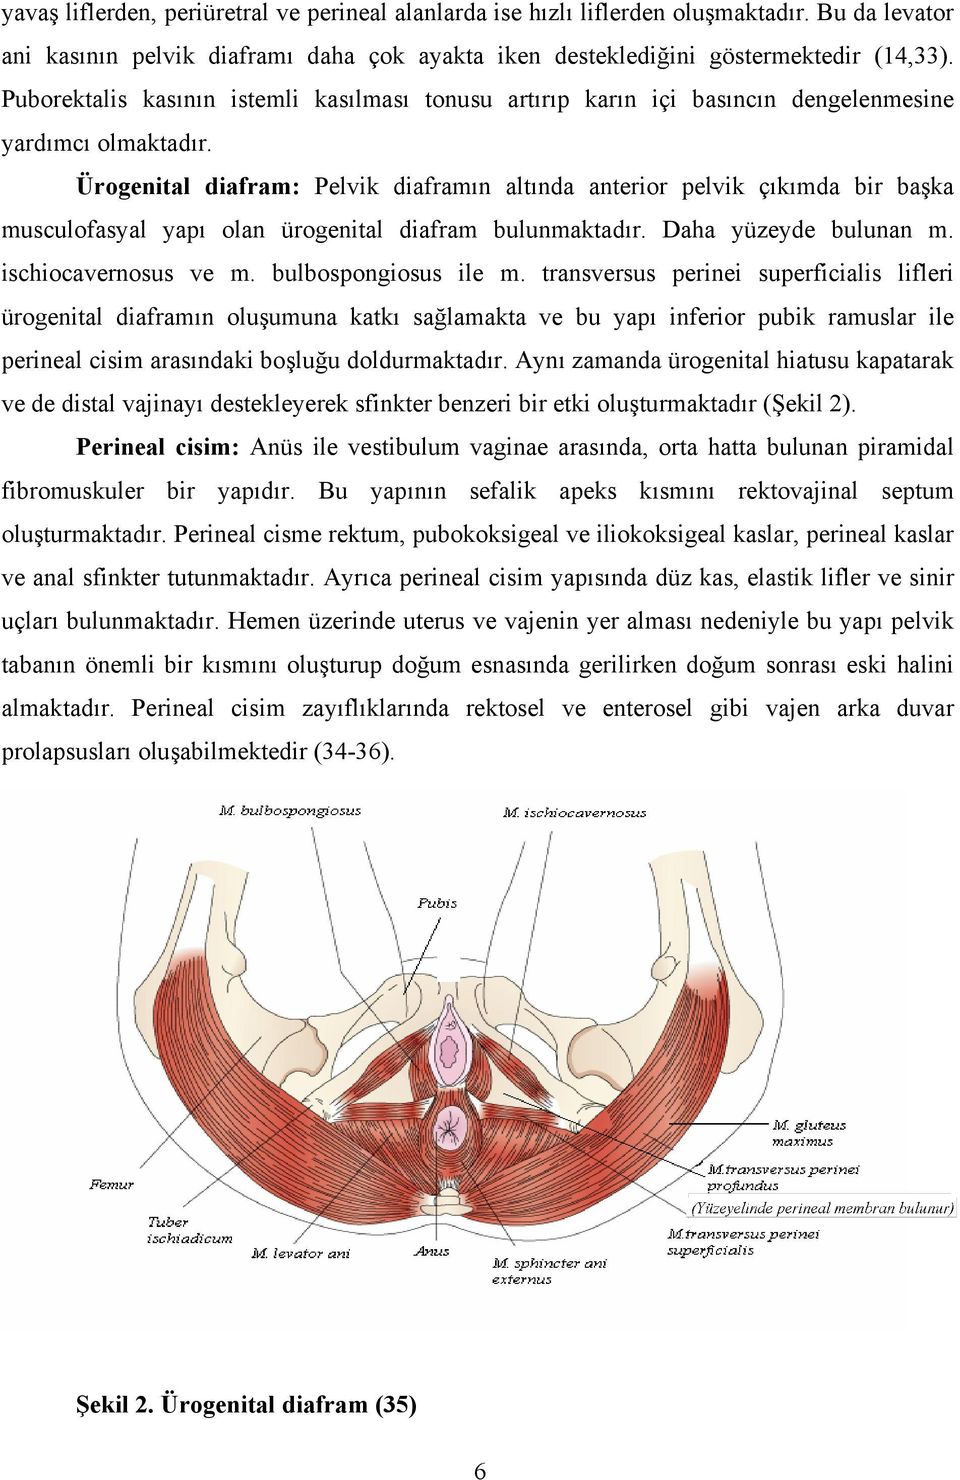 Ürogenital diafram: Pelvik diaframın altında anterior pelvik çıkımda bir başka musculofasyal yapı olan ürogenital diafram bulunmaktadır. Daha yüzeyde bulunan m. ischiocavernosus ve m.